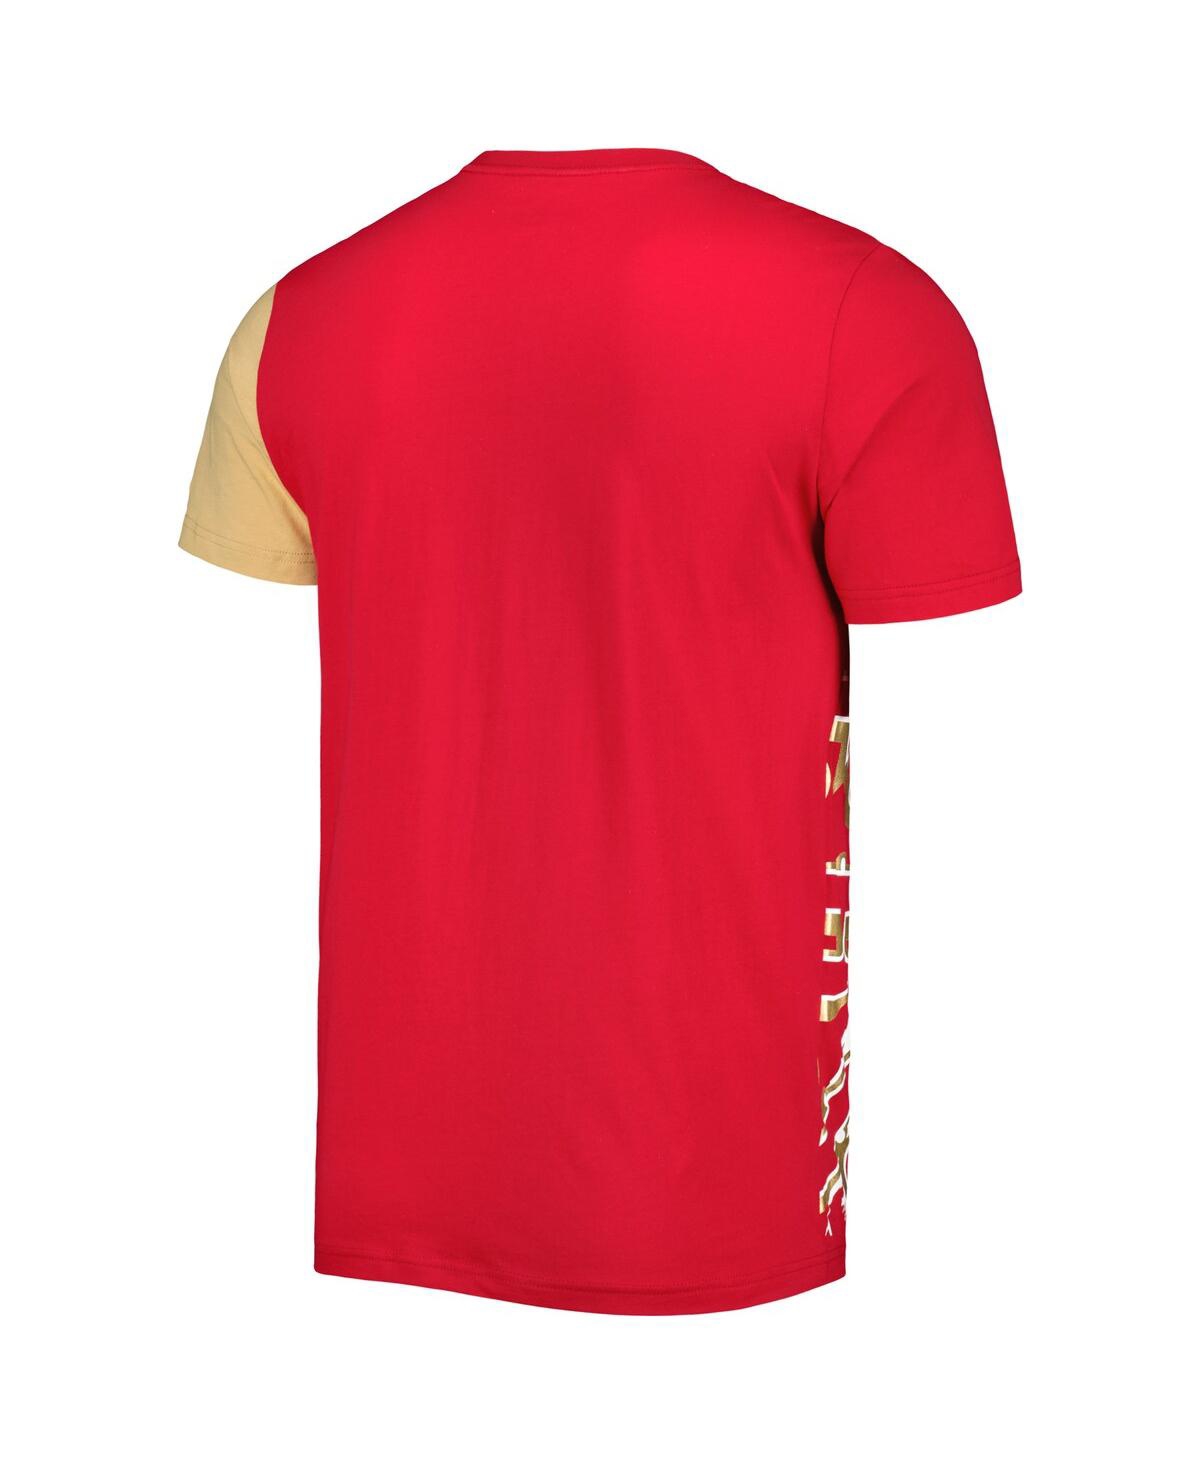 Shop Starter Men's  Scarlet San Francisco 49ers Extreme Defender T-shirt